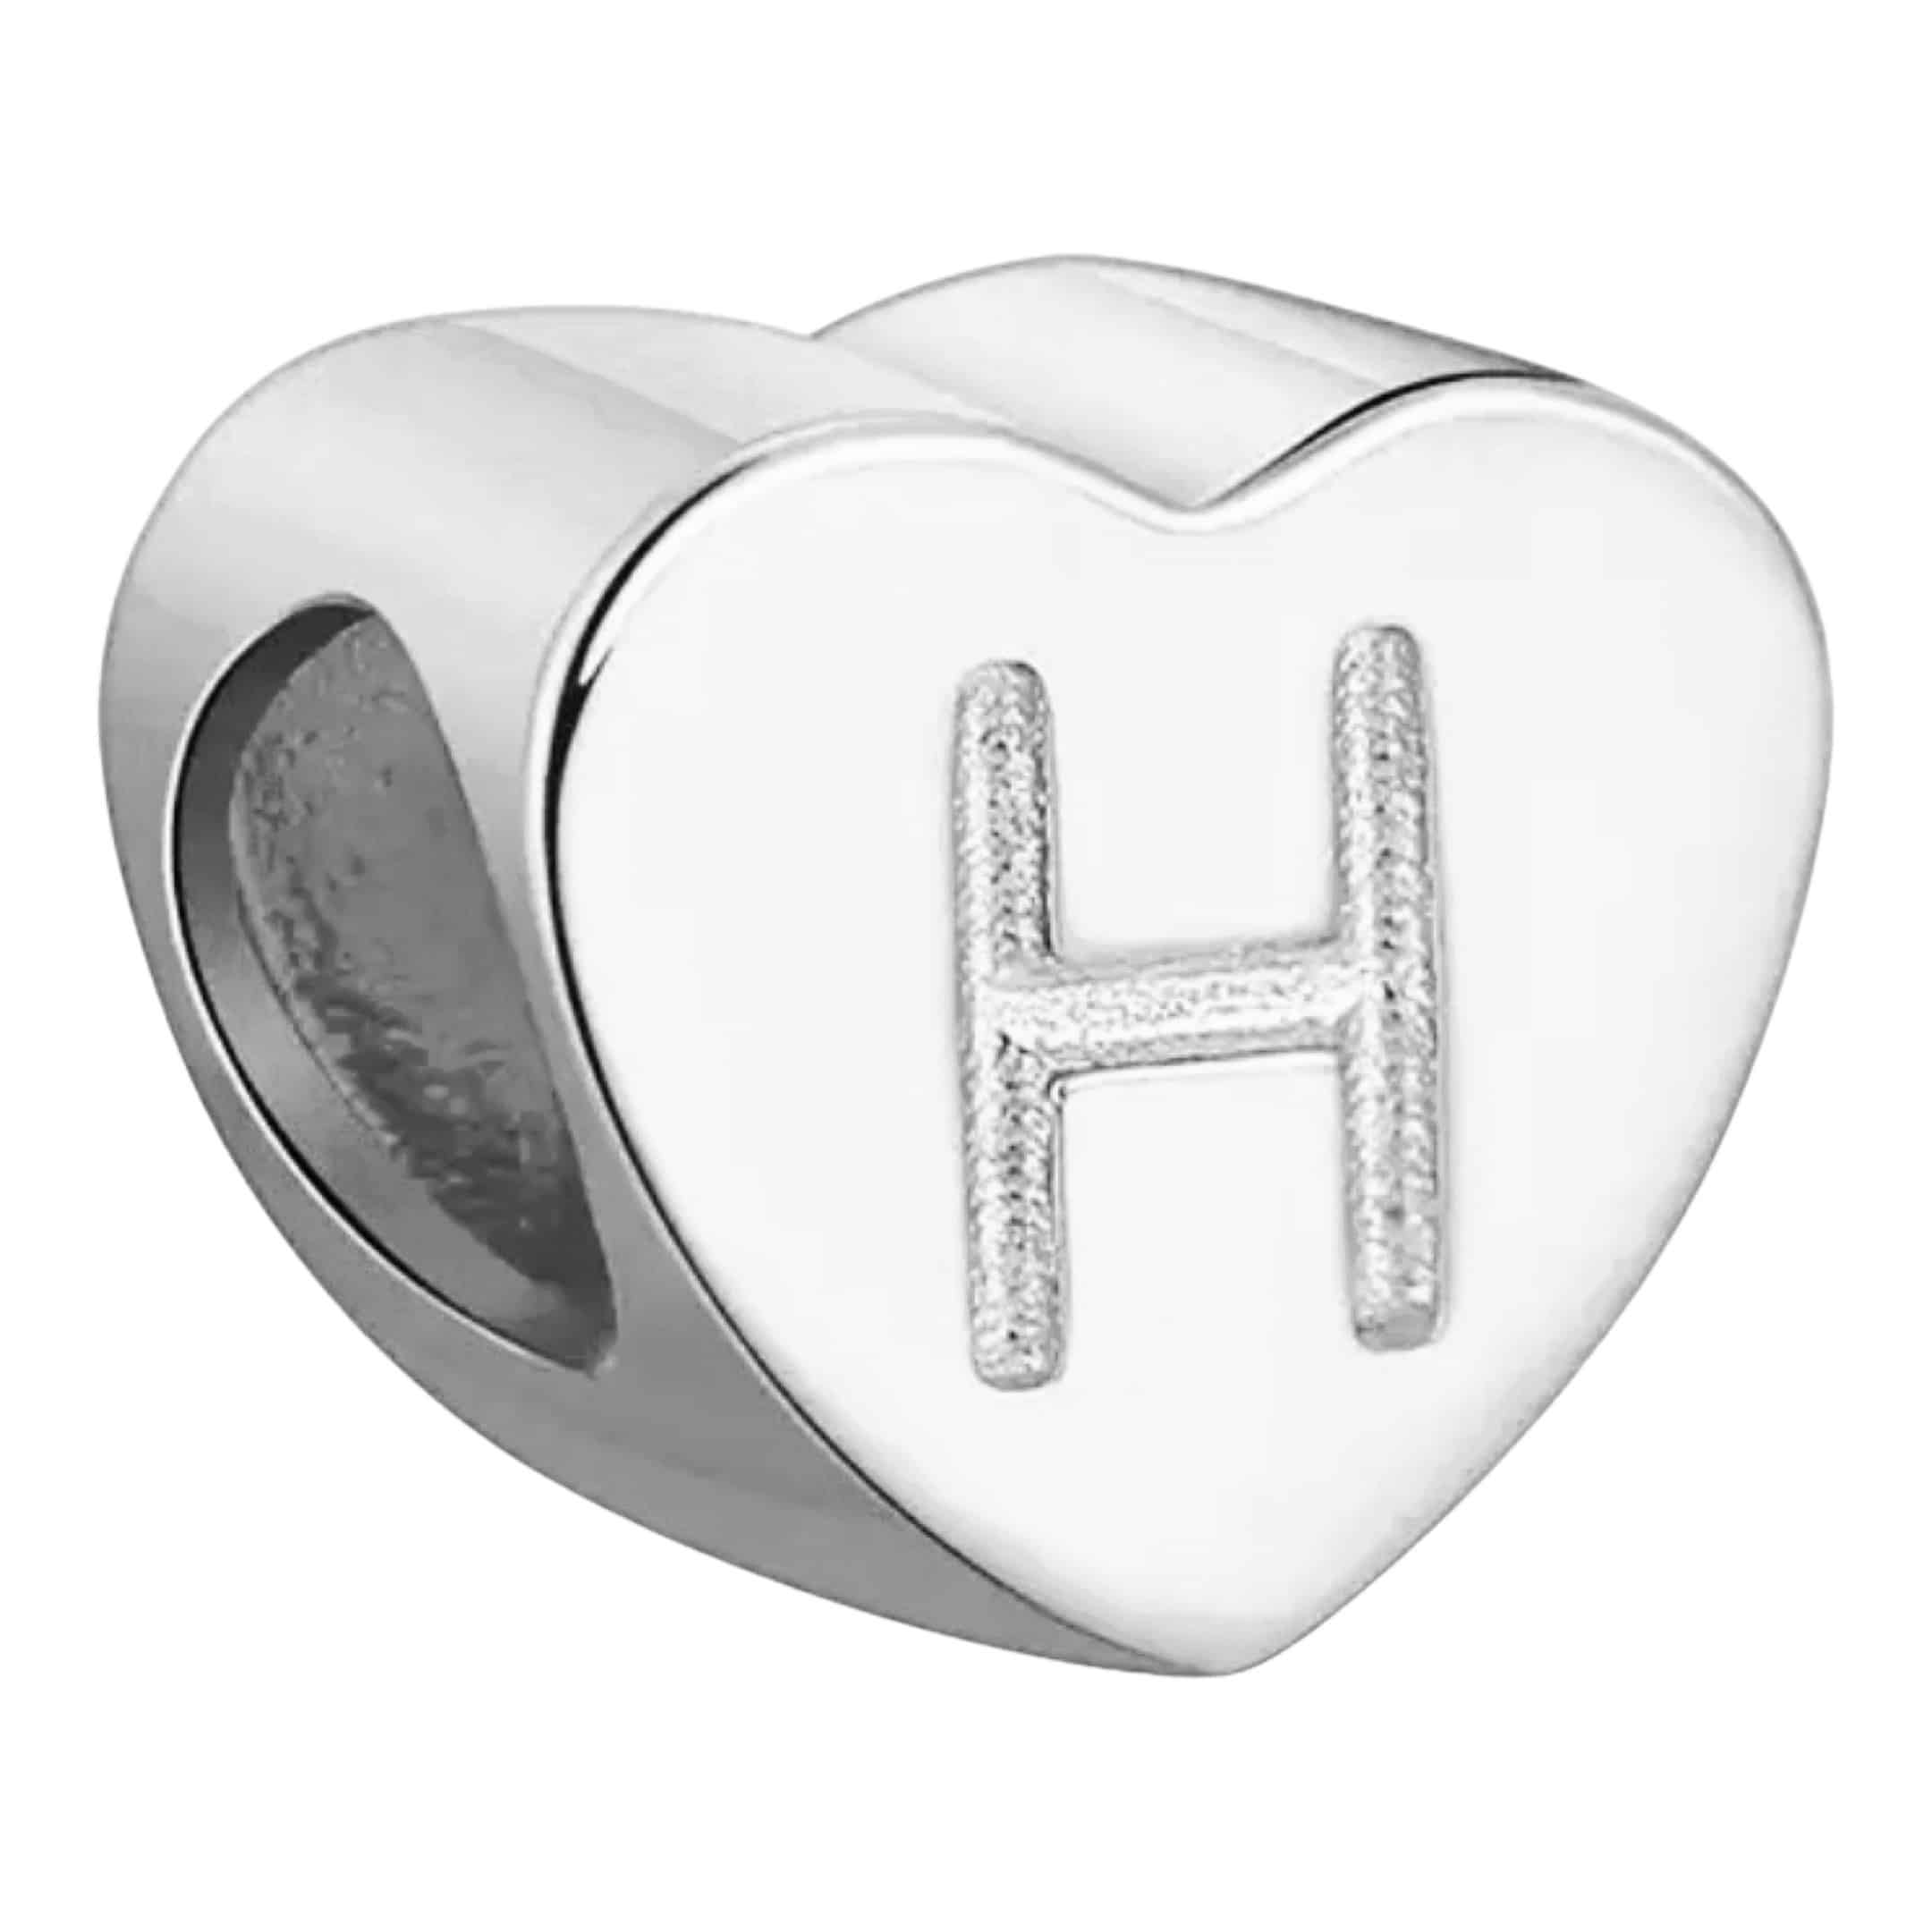 Product Afbeelding Voor en Achteraanzicht van onze prachtige hart letter bead uit de collectie sierletters en cijfers. Deze prachtige bedel met de letter H is gemaakt van 925 sterling zilver en is gegraveerd met de letter h in het hart.